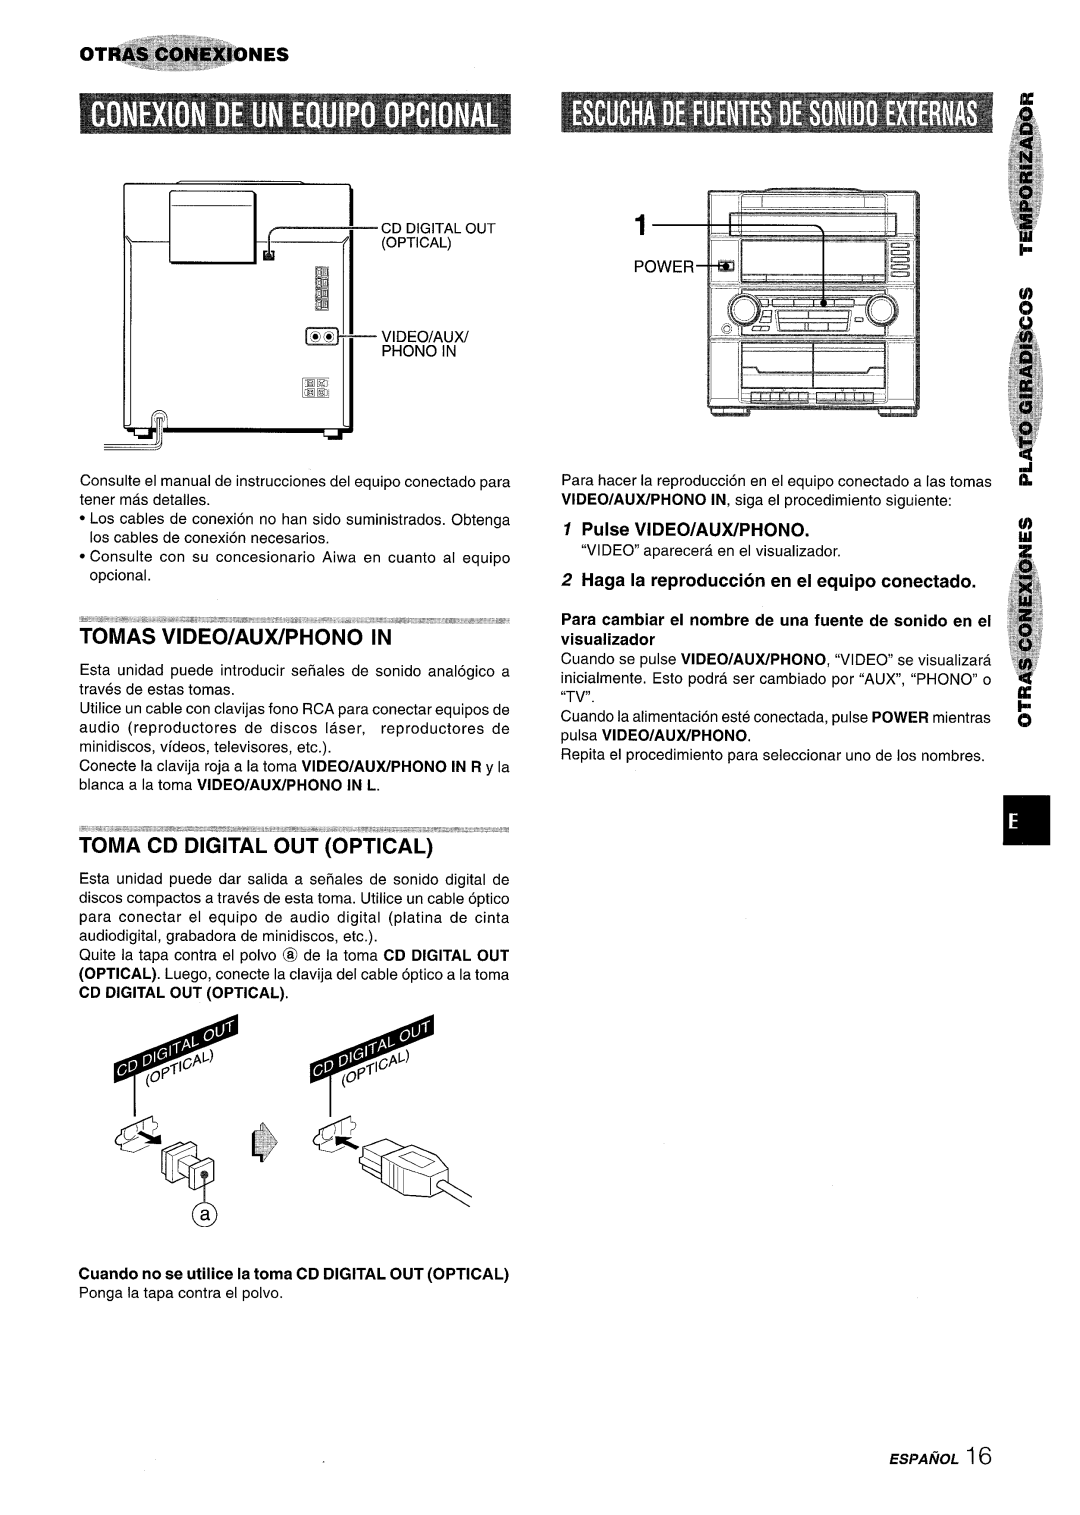 Aiwa Z-R555 manual Pulse VIDEO/AUX/PHONO, Haga la reproduction en el equipo conectado 